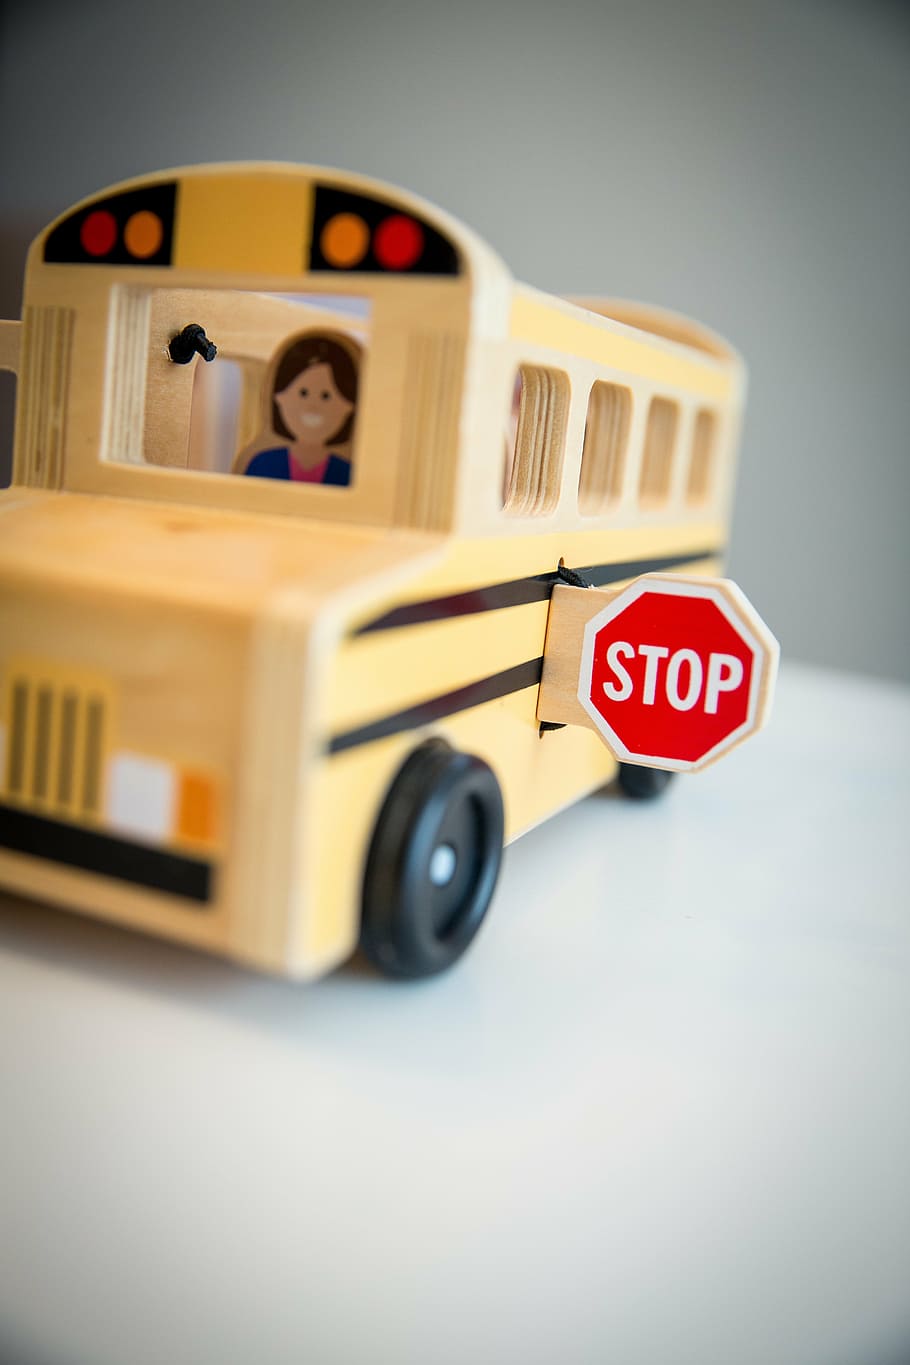 autobús en miniatura marrón, parada, escuela, señal de stop, parada de autobús, niños, seguridad, seguridad escolar, advertencia, juguete